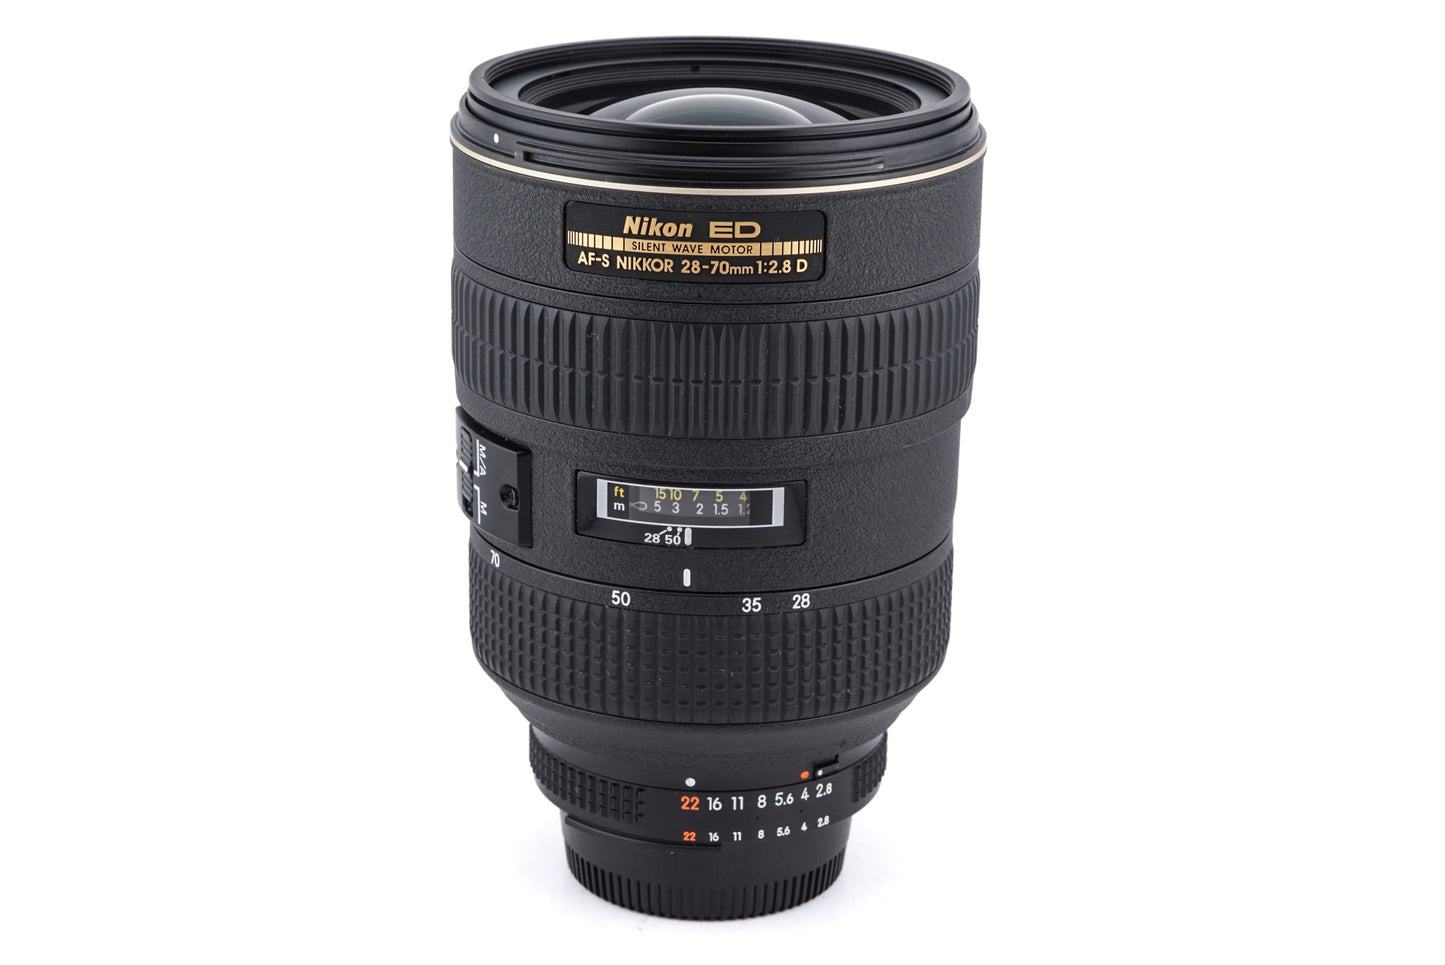 Nikon 28-70mm f2.8 AF-S Nikkor D ED SWM - Lens